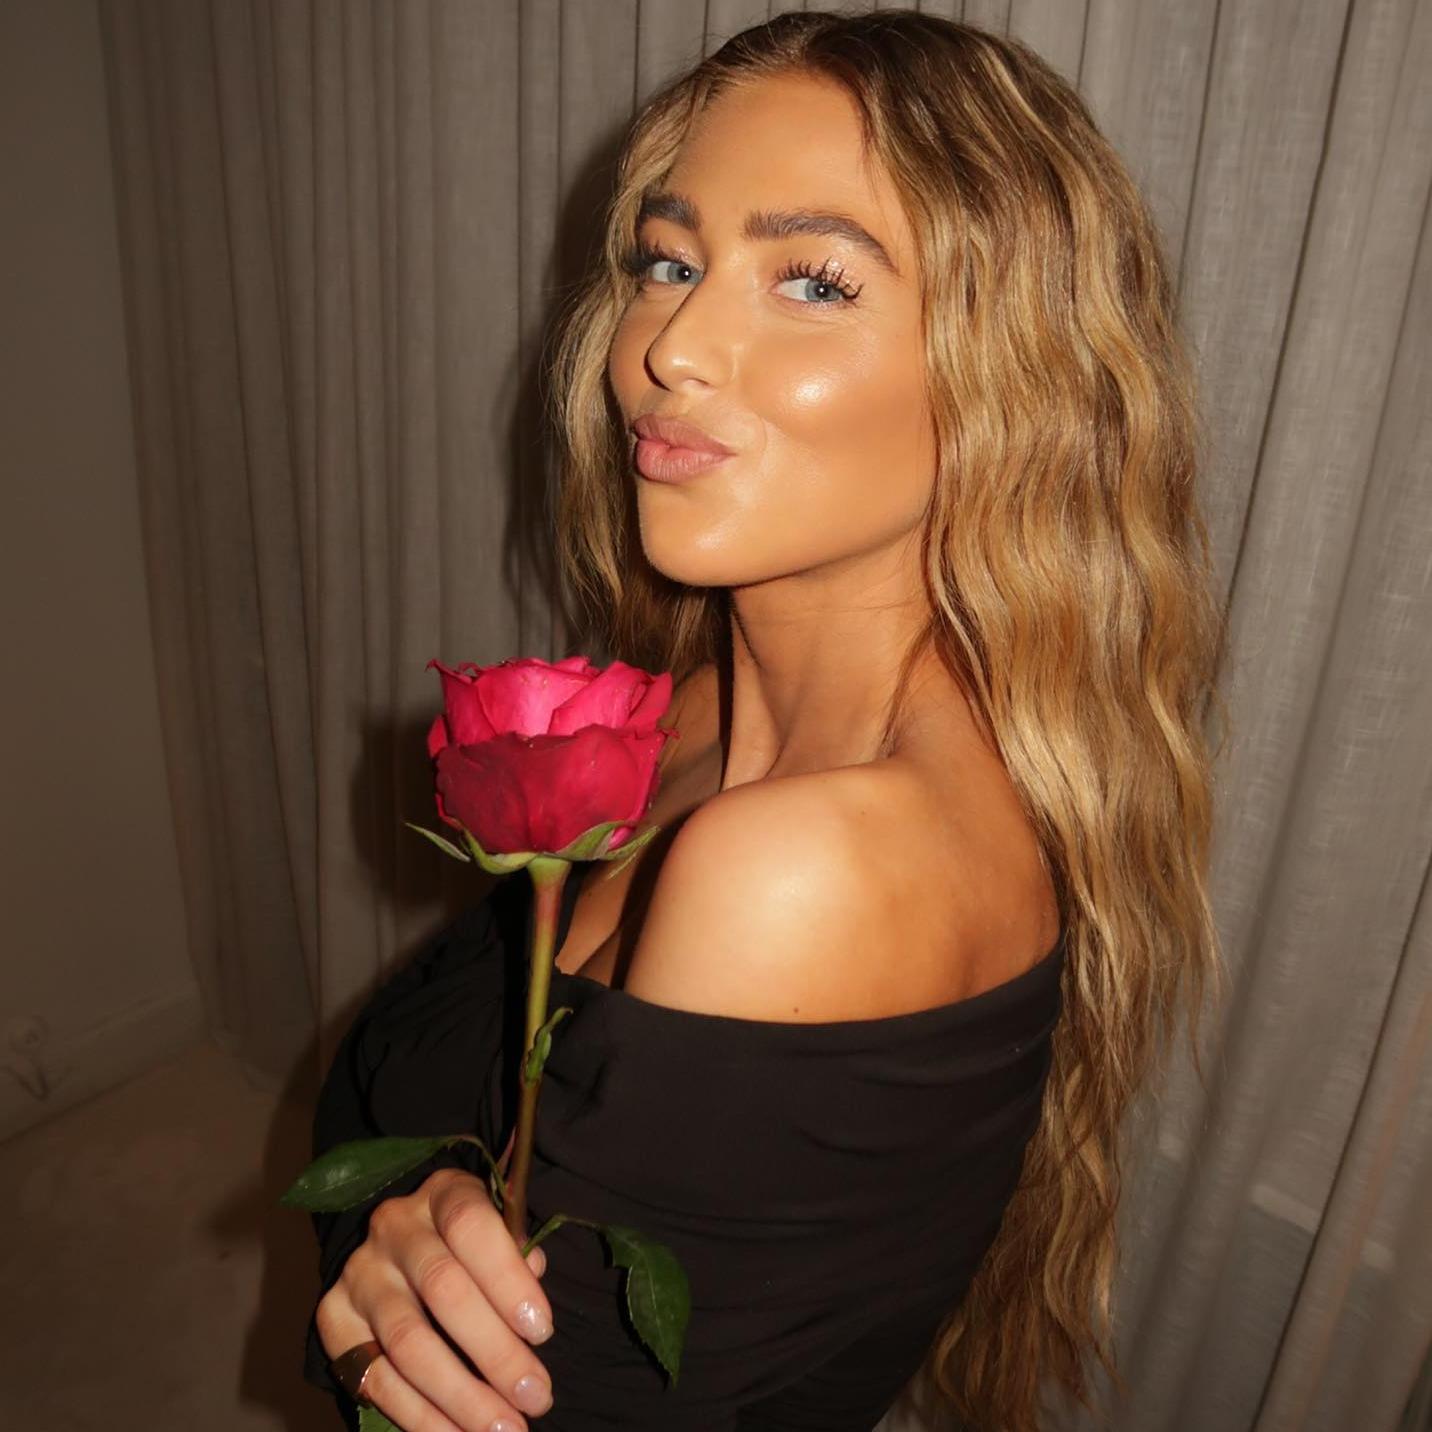 La influencer Emili Sindlev posa de perfil con una rosa en la mano, un maquillaje natural y el pelo suelo y ondulado